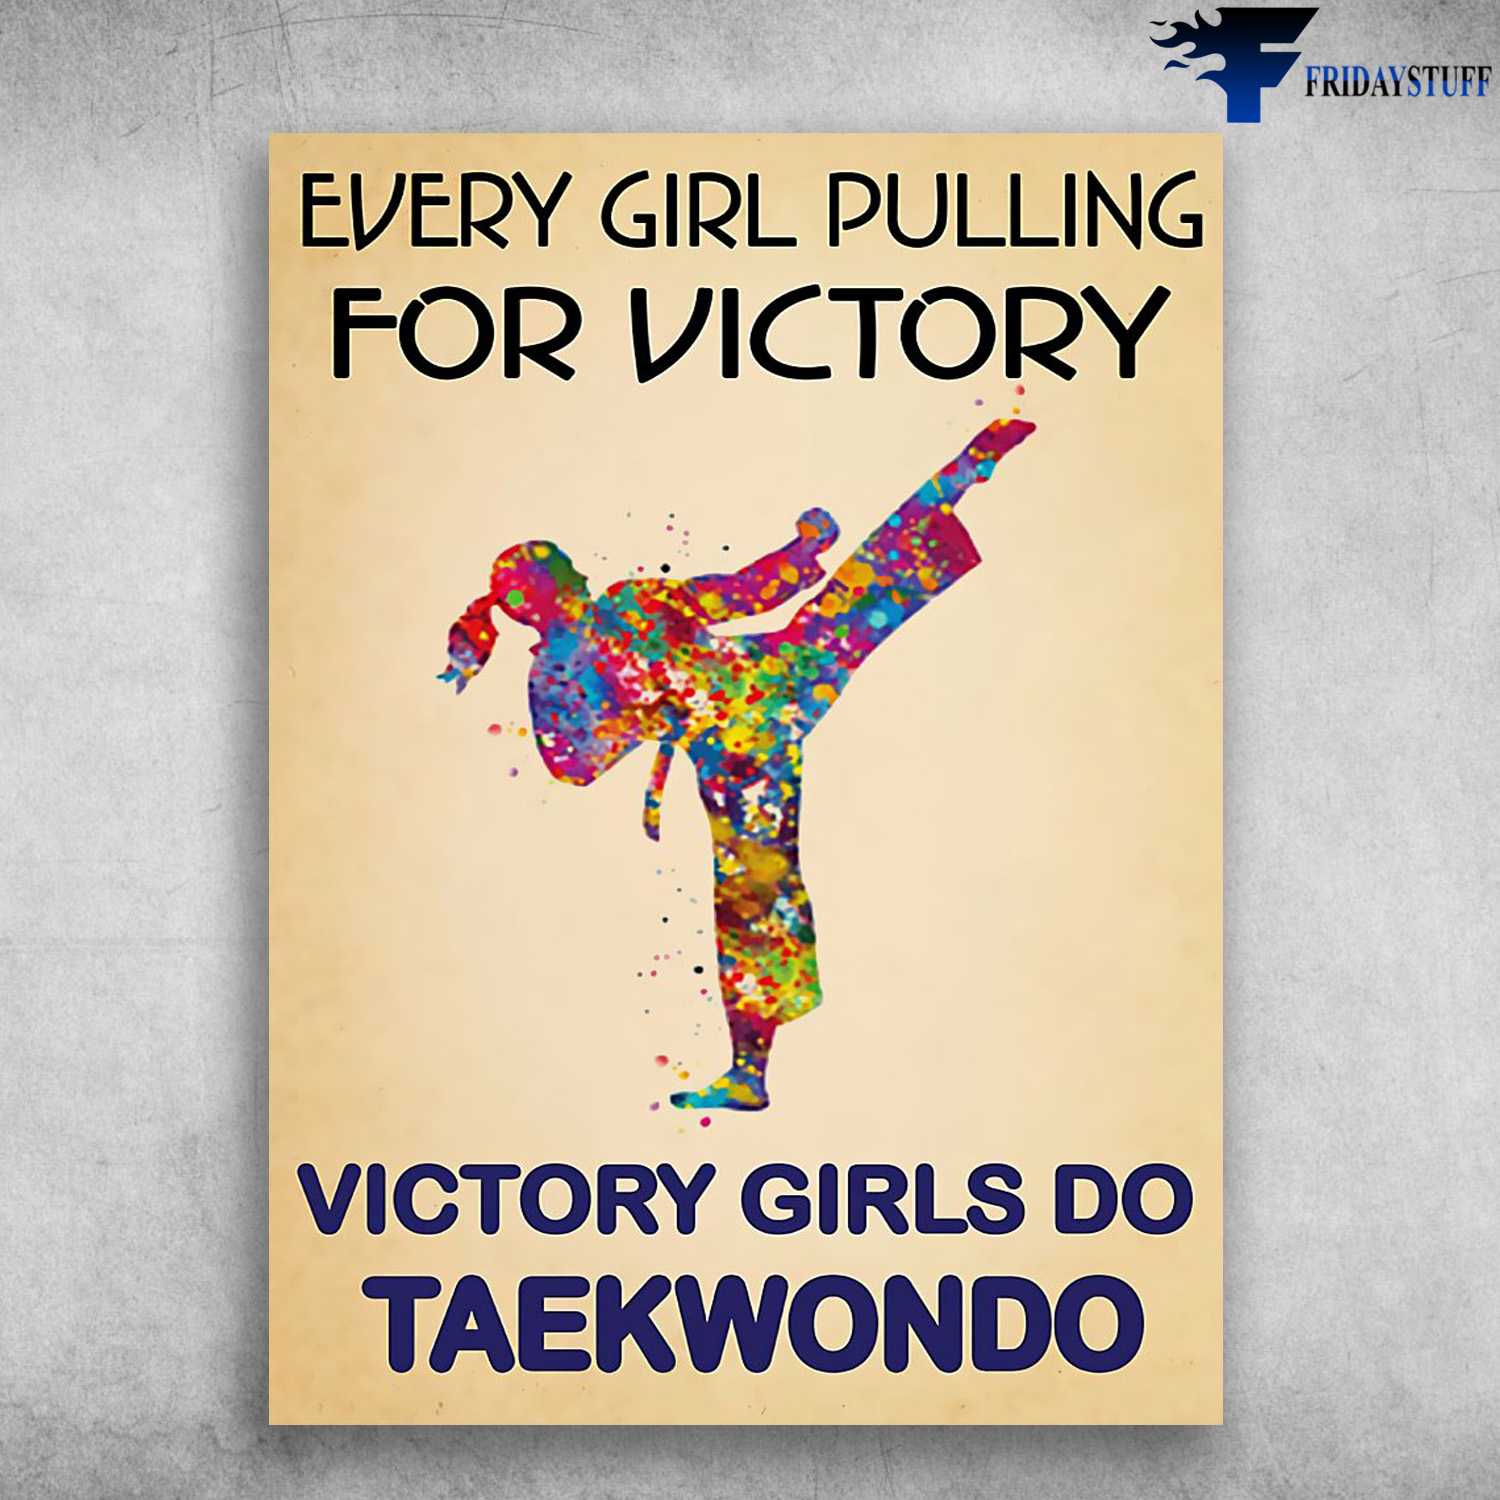 Teakwondo Poster, Teakwondo Girl, Every Girl Pulling For Victory, Victory Girls Do Teakwondo